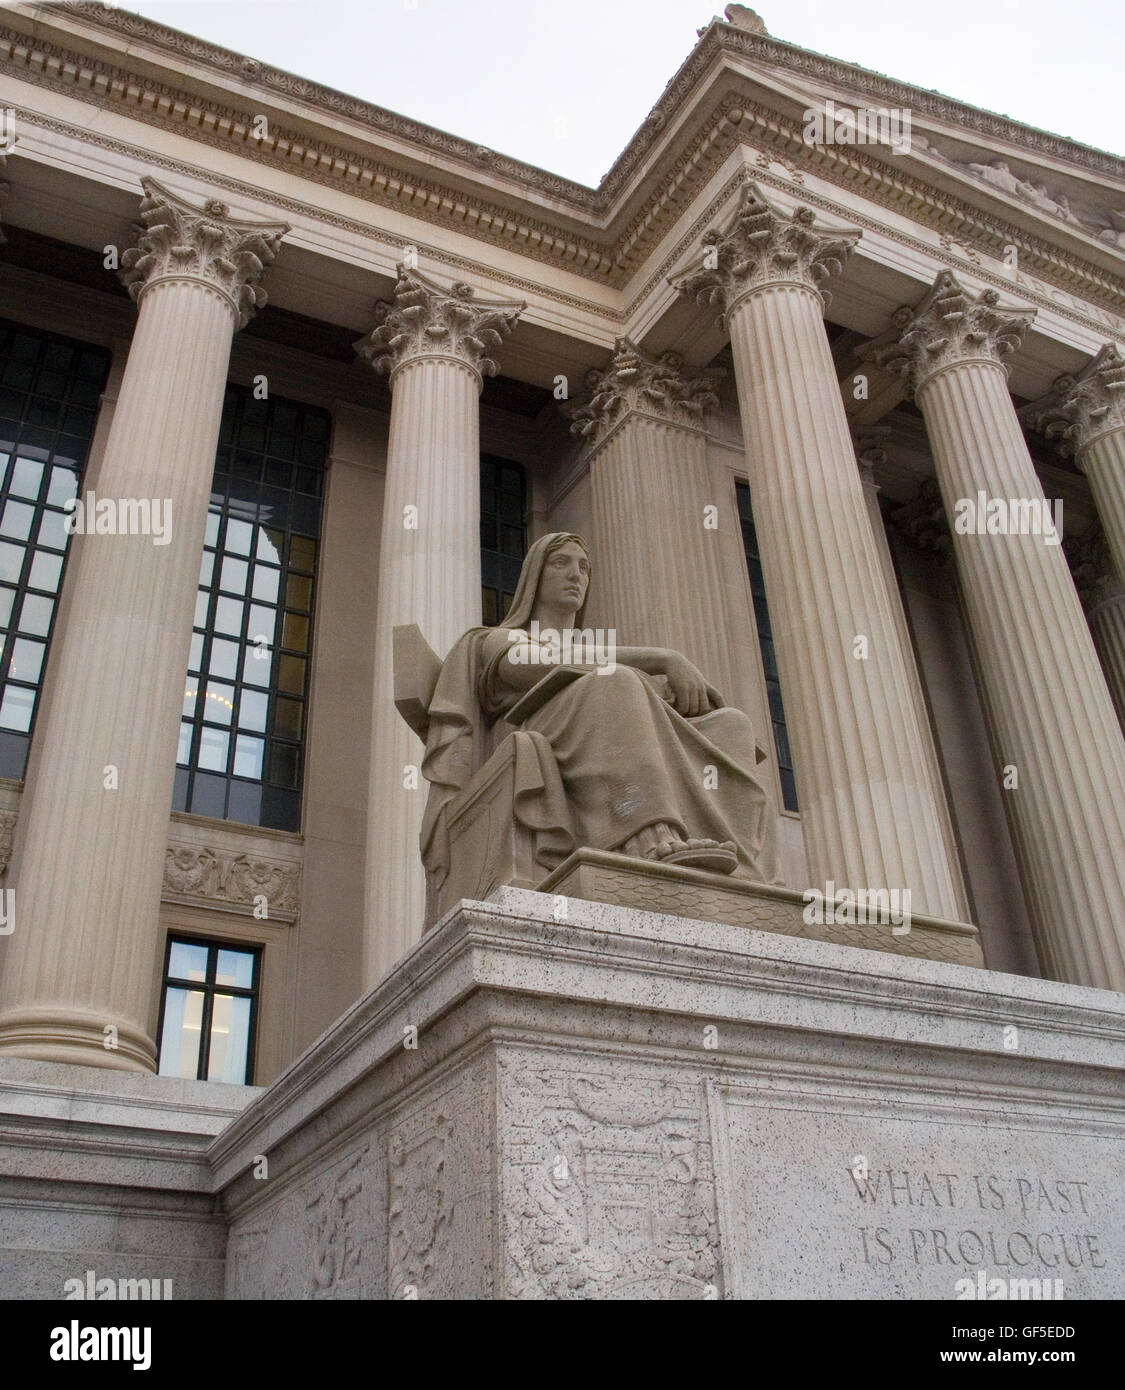 Den National Archives in Washington, D.C. Gebäude ist eines der beeindruckendsten Bauwerke in der Stadt. Stockfoto